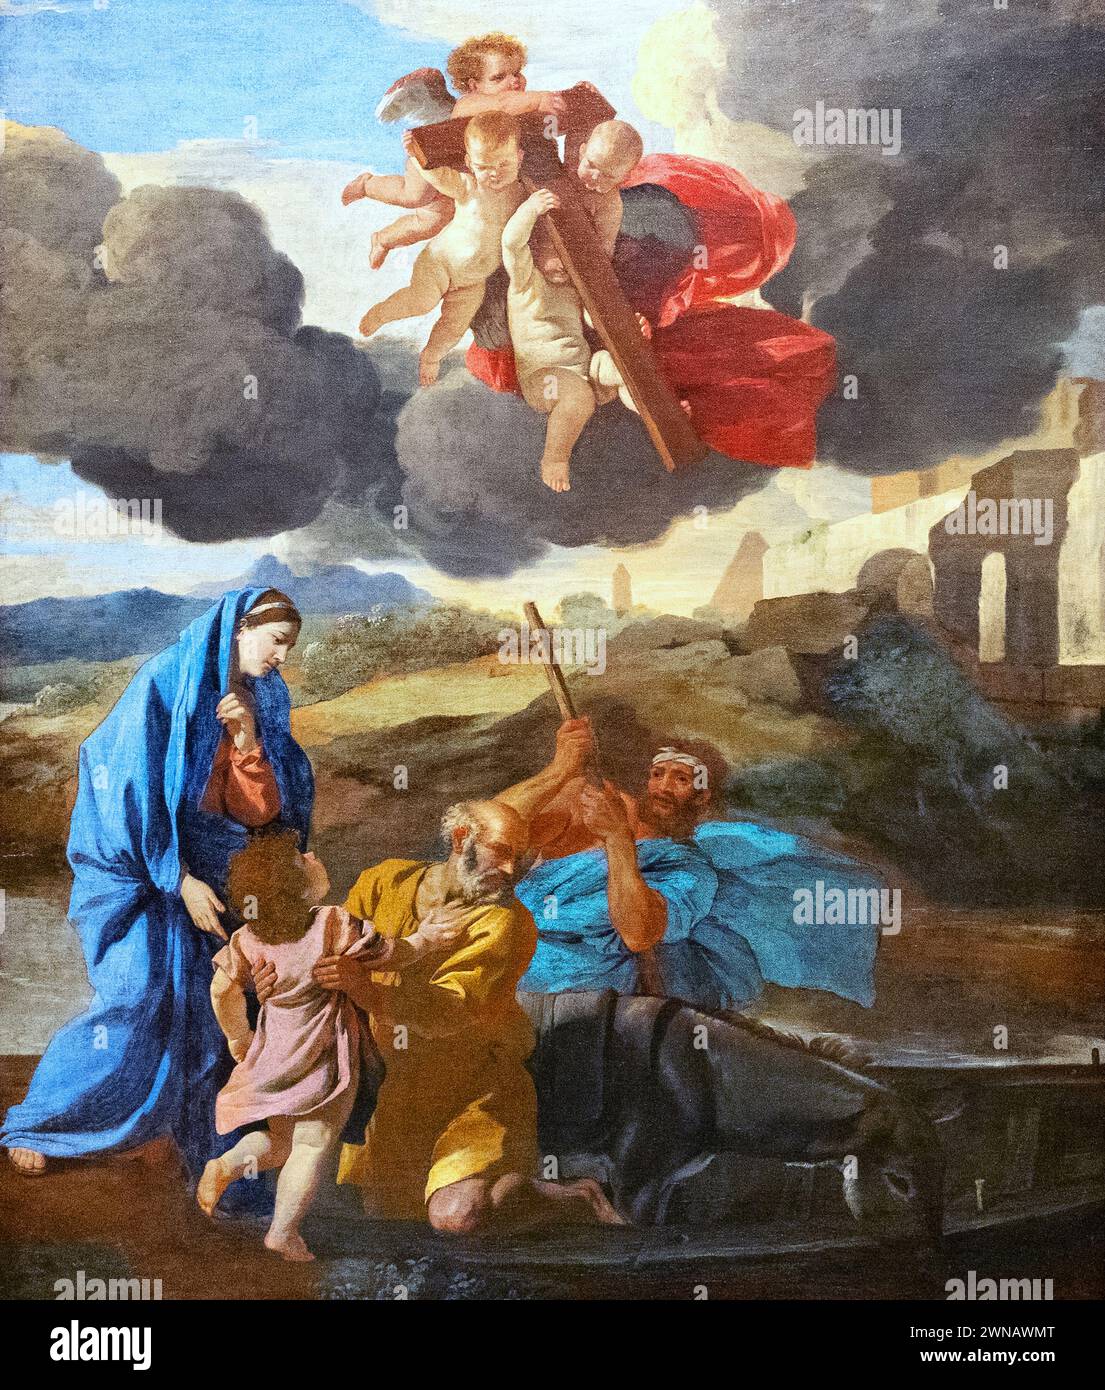 Peinture de Nicolas Poussin, 'le retour de la Sainte famille d'Egypte' 1628-30, peintre baroque français du XVIIe siècle, peinture de scène biblique. Banque D'Images